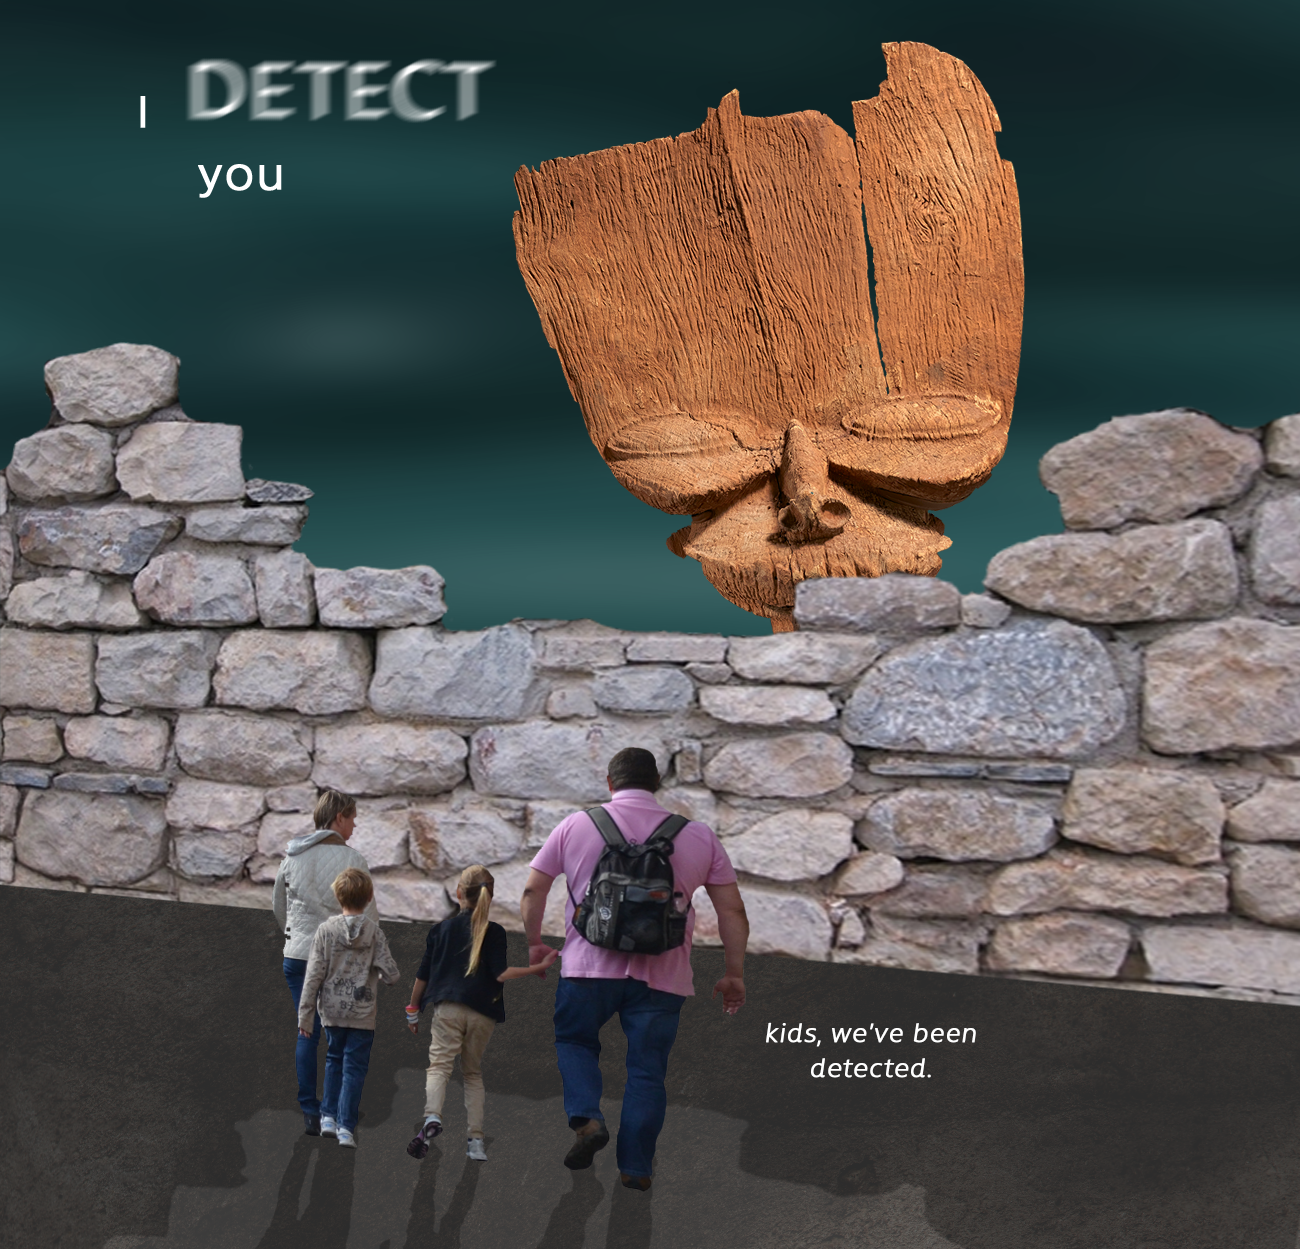 kids we ve been detected - | Detect you kids, we've been detected.